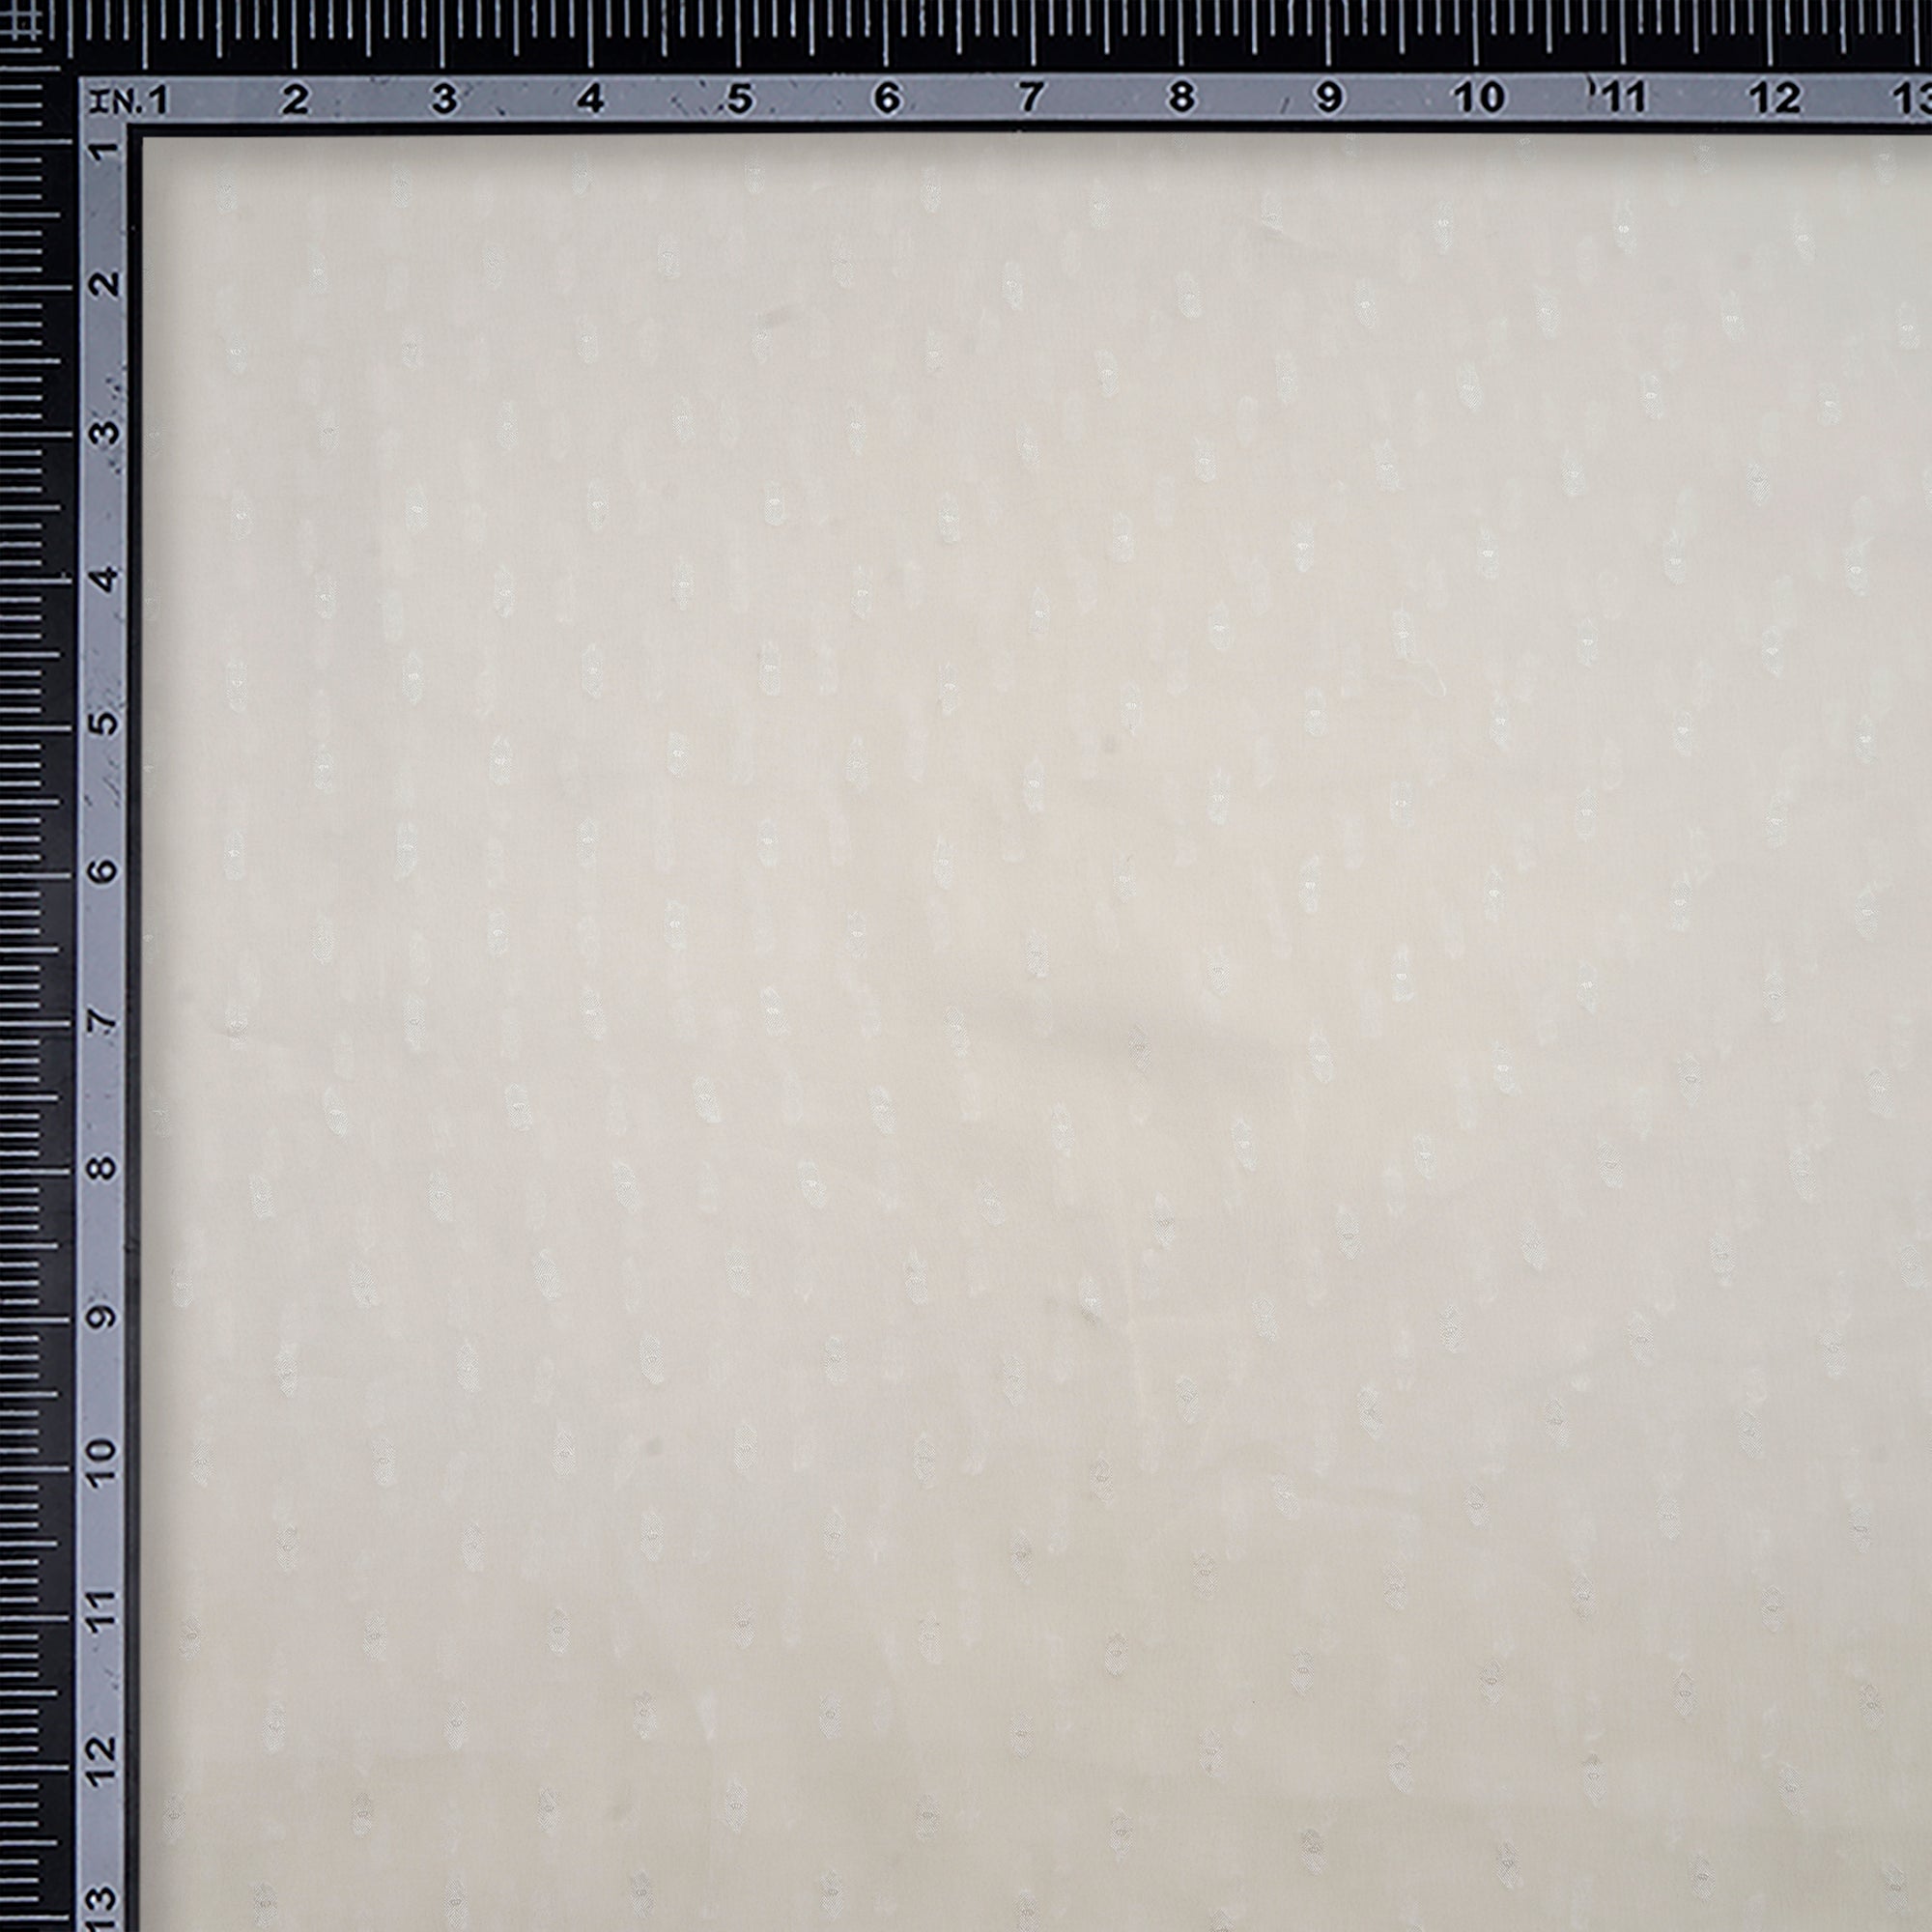 White Dyeable Booti Pattern Chiffon Jacquard Fabric